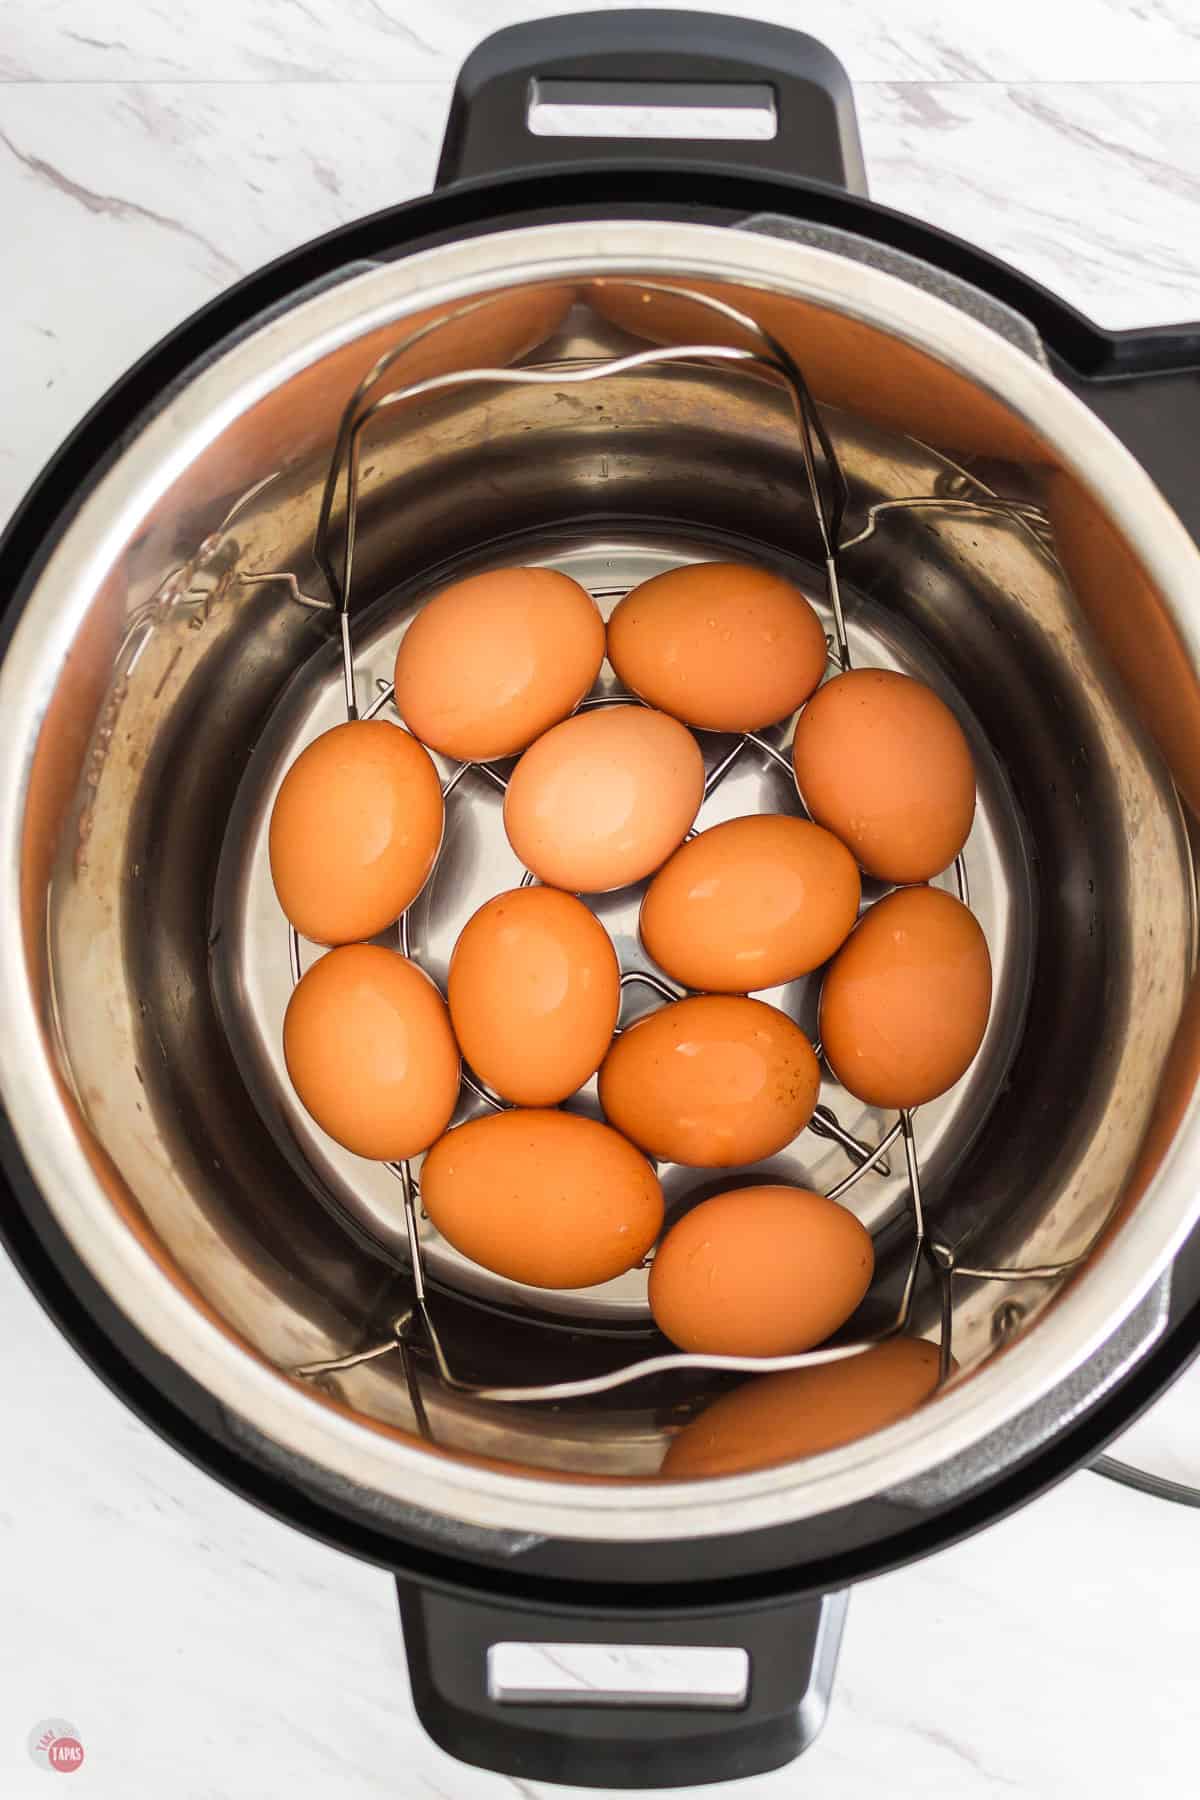 pot of eggs